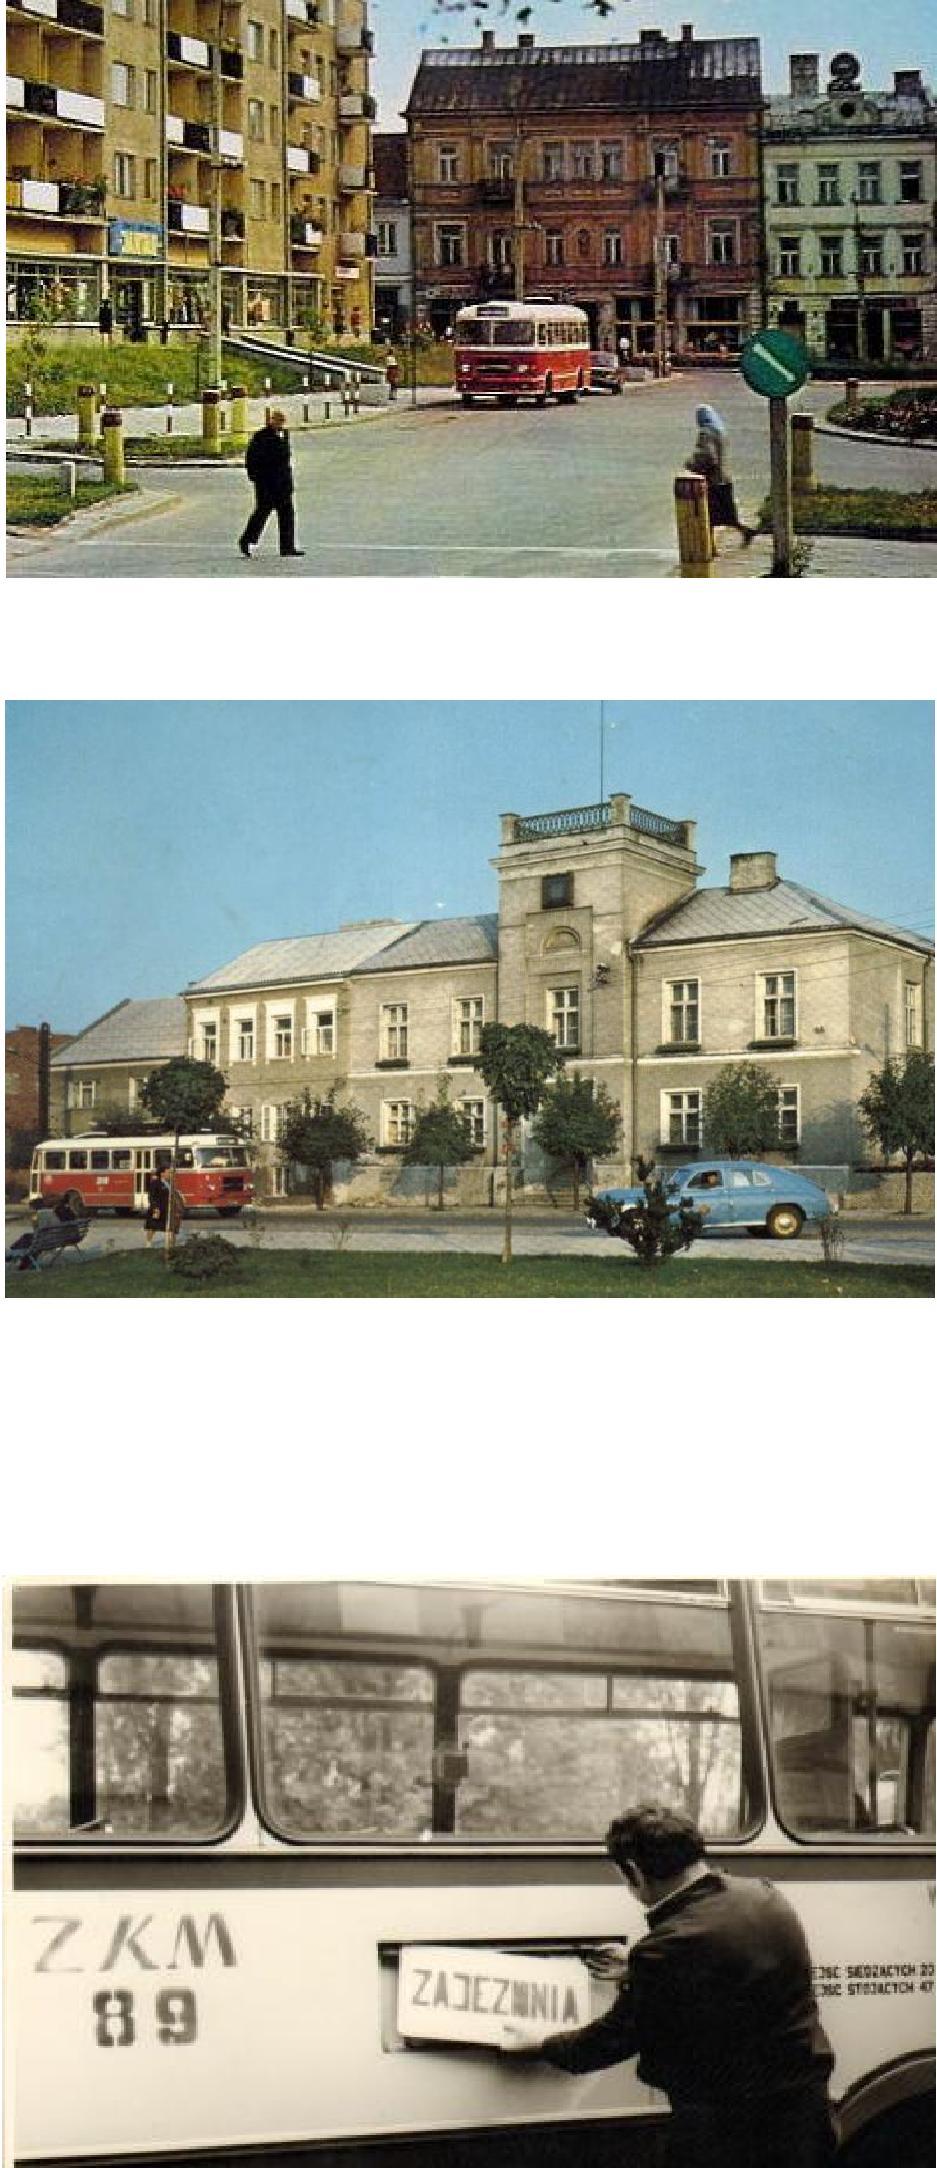 Przez pierwsze 20 lat funkcjonowania MPK Łomża nie istniało jako oddzielne przedsiębiorstwo. W okresie od 15.07.1969 do 30.06.